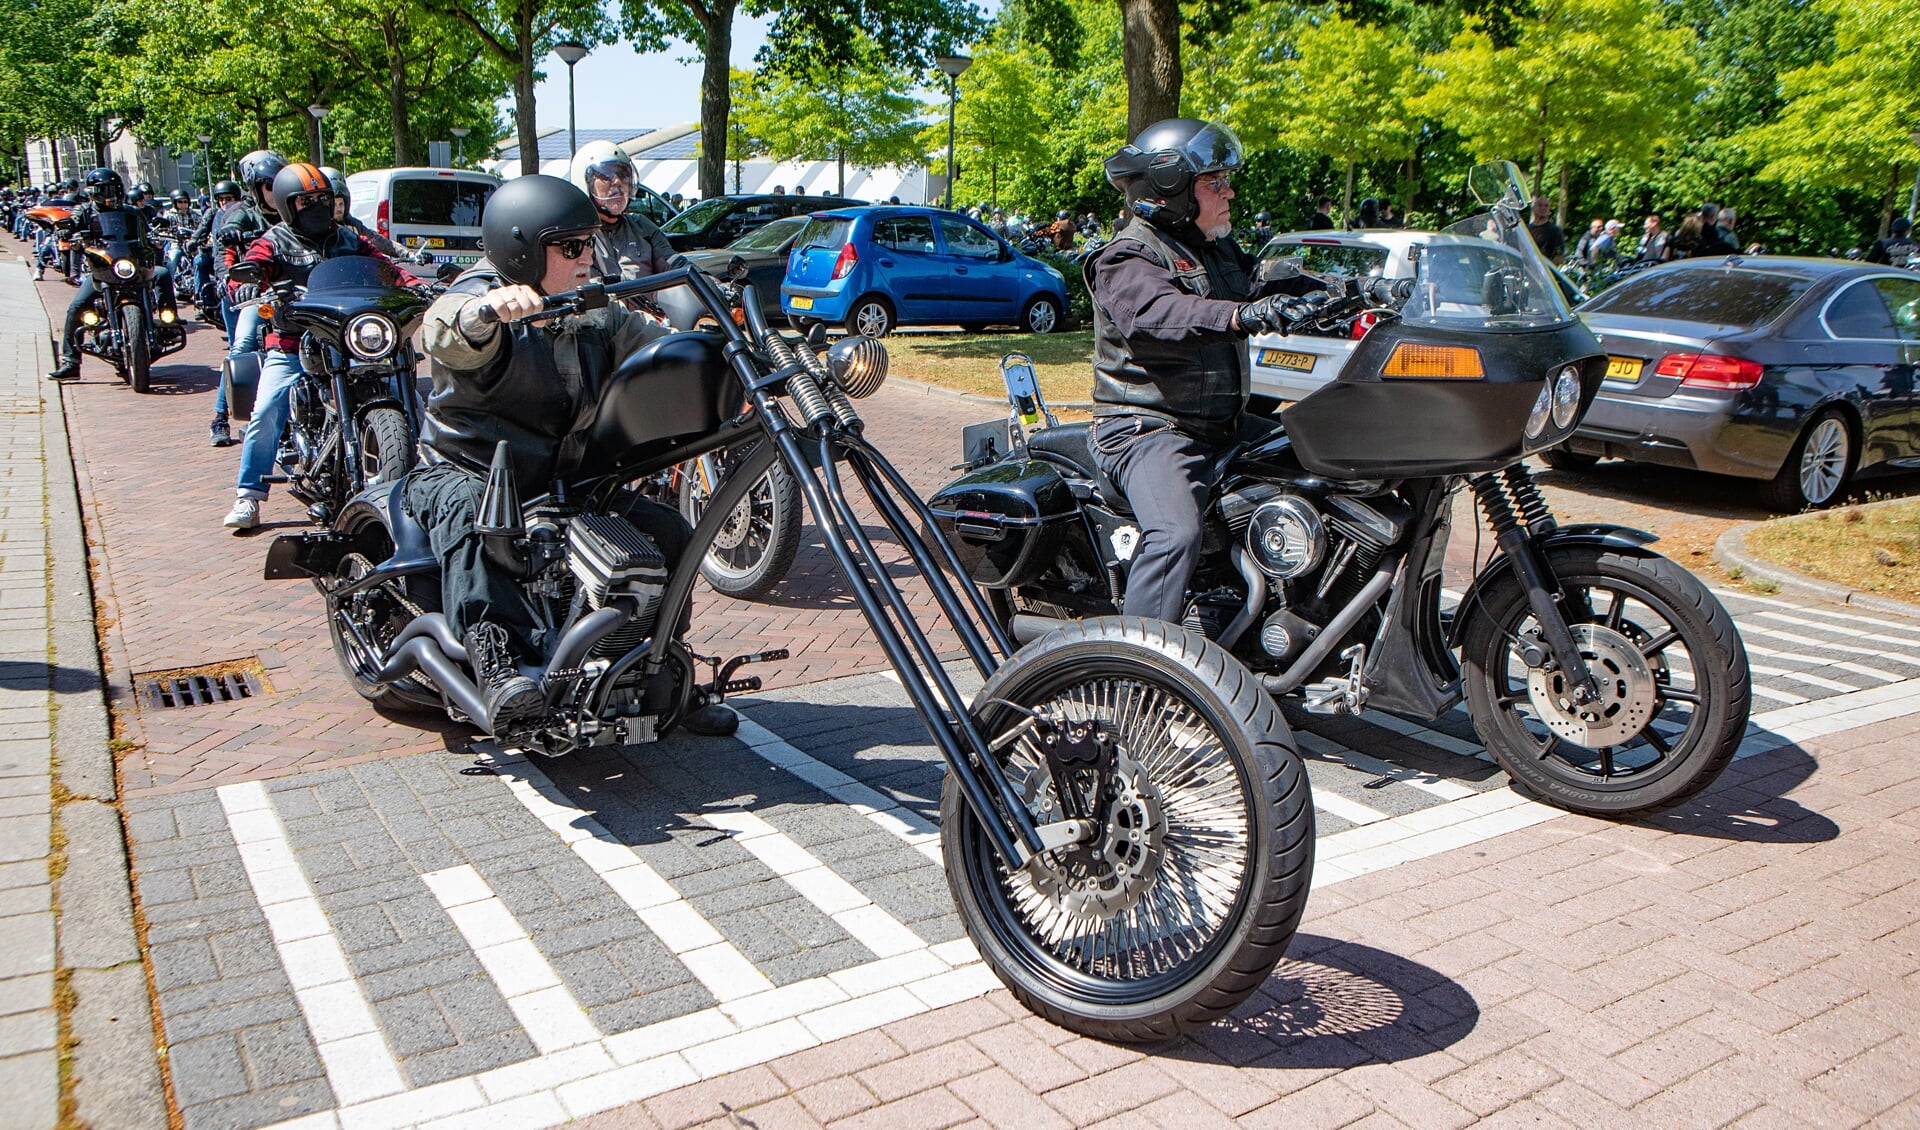 Vragen over de grote hoeveelheid motoren in Huizen tijdens de Harleydag.